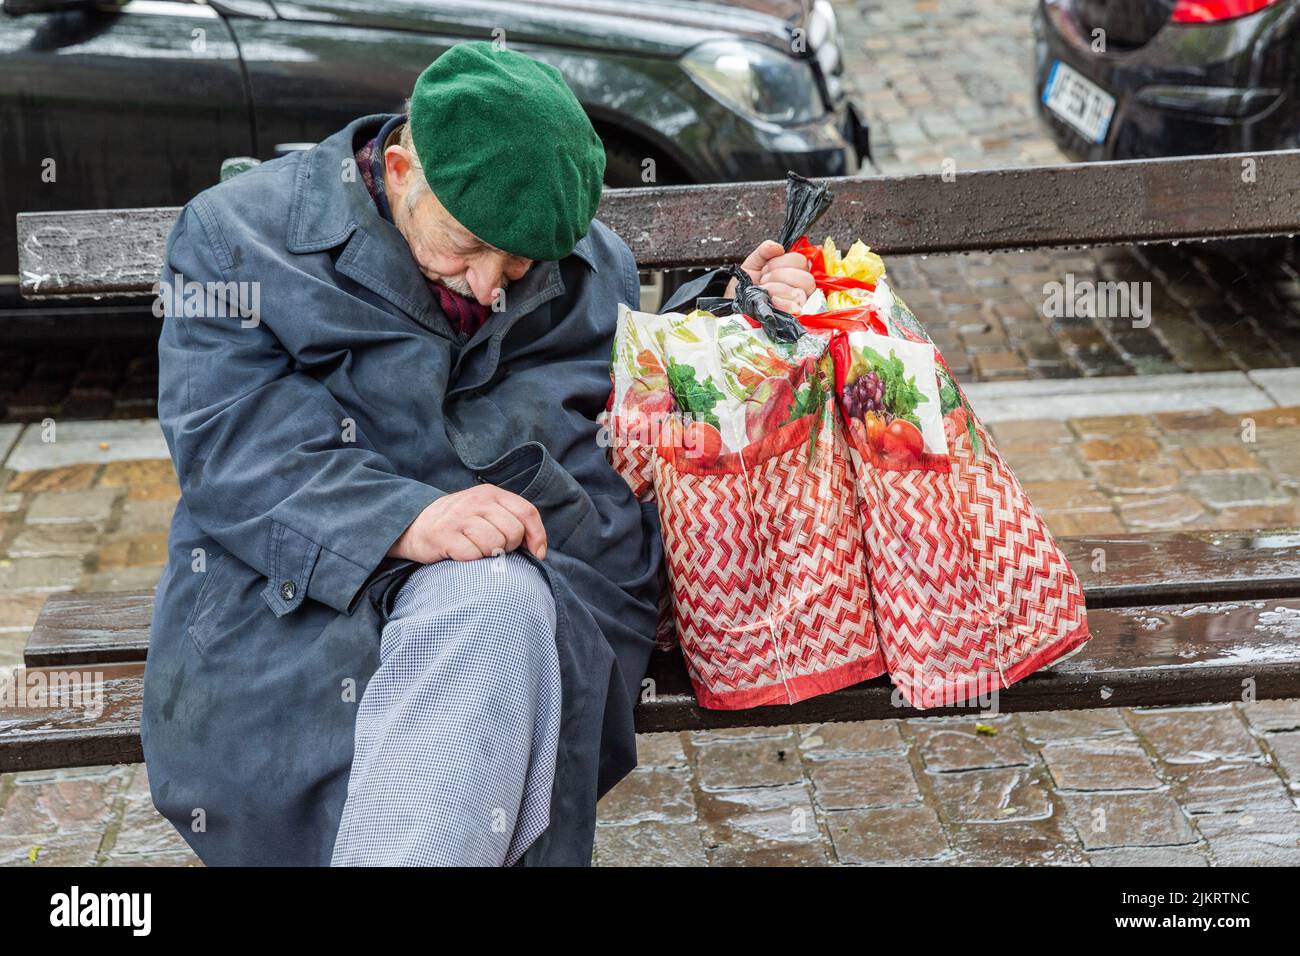 Anciano sentado en un banco público, somnoliento bajo la lluvia, sosteniendo sus dos bolsas de la compra en una mano. Foto de stock